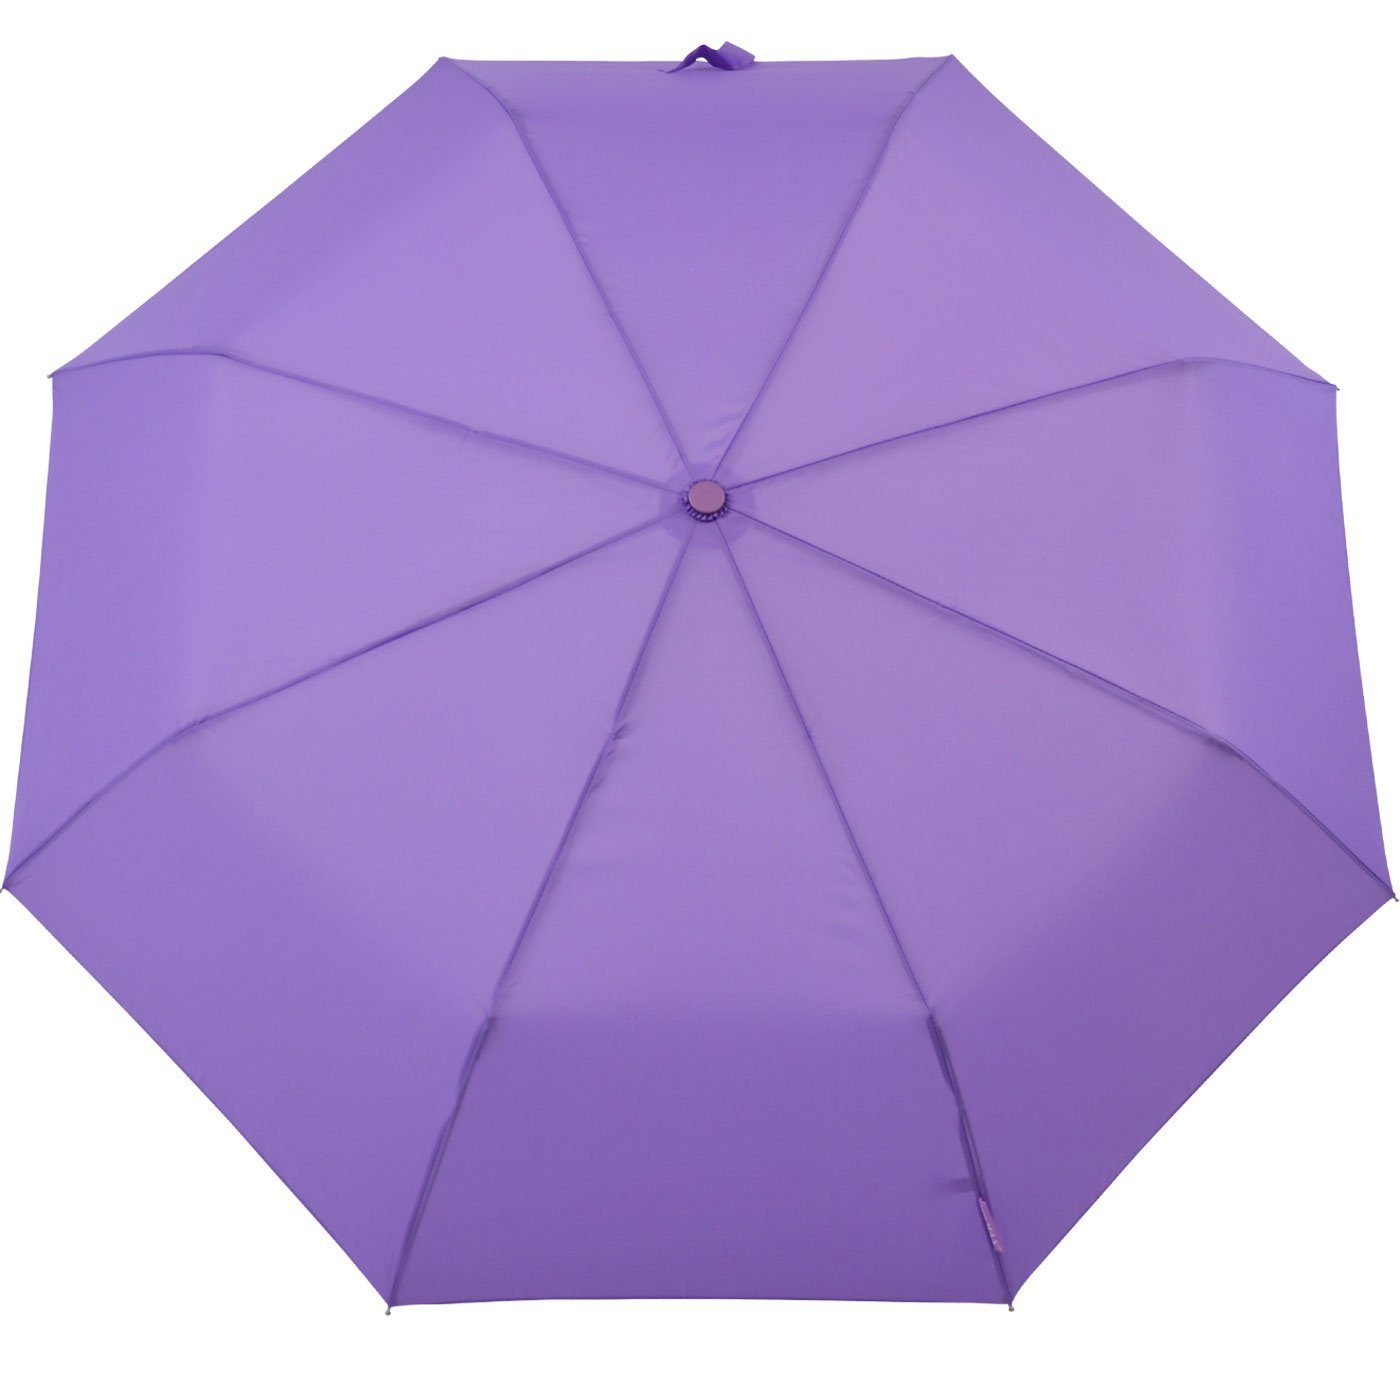 Impliva violett Taschenregenschirm Schirm leichter Handöffner, miniMAX® in Tasche kleiner passt jjede